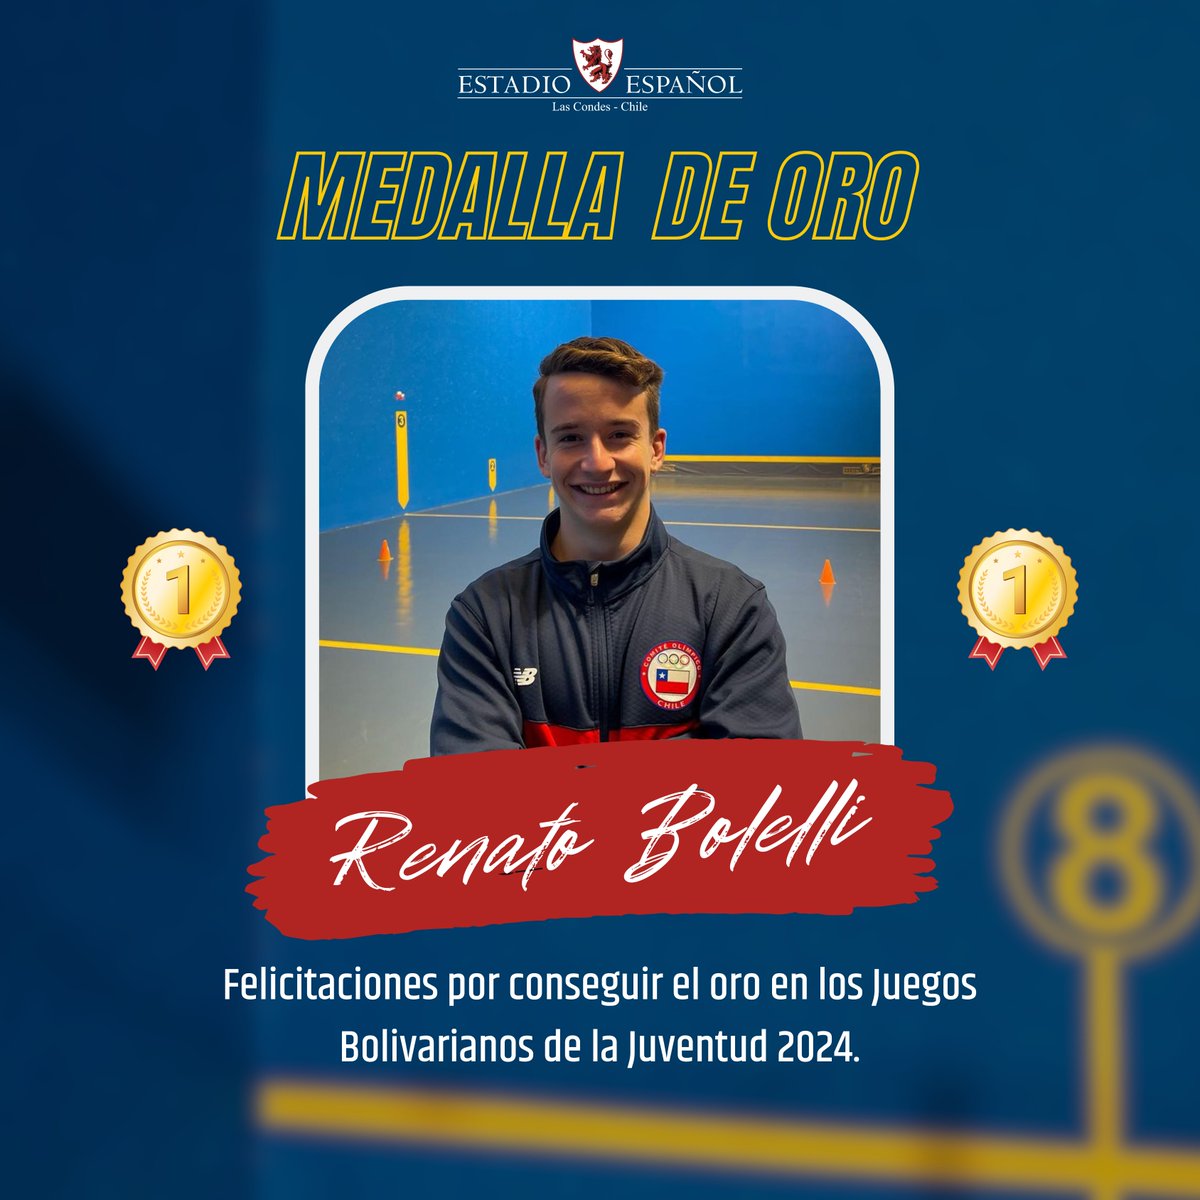 🥇Felicitamos con enorme orgullo a nuestro socio y destacado pelotari, Renato Bolelli, por su brillante logro: ¡medalla de oro en los Juegos Bolivarianos de la Juventud 2024! Este triunfo no solo es un honor para Estadio Español, sino también para Chile. 🇨🇱✨ #EstadioEspañol